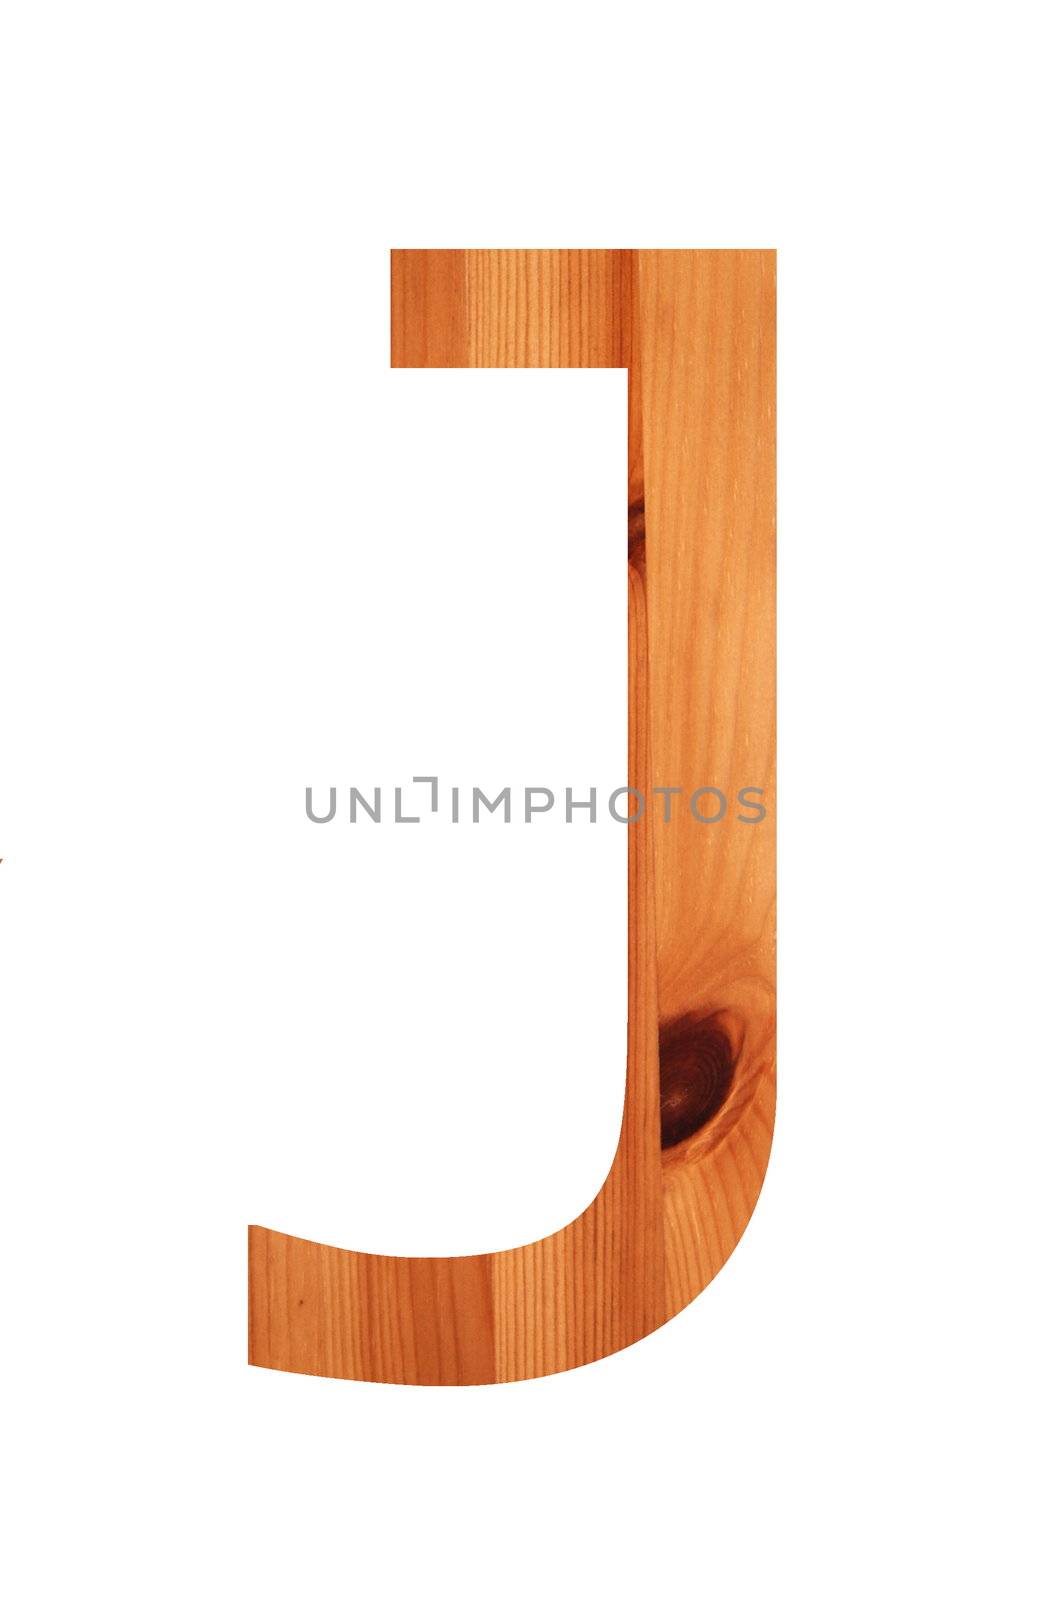 wood alphabet J by gunnar3000